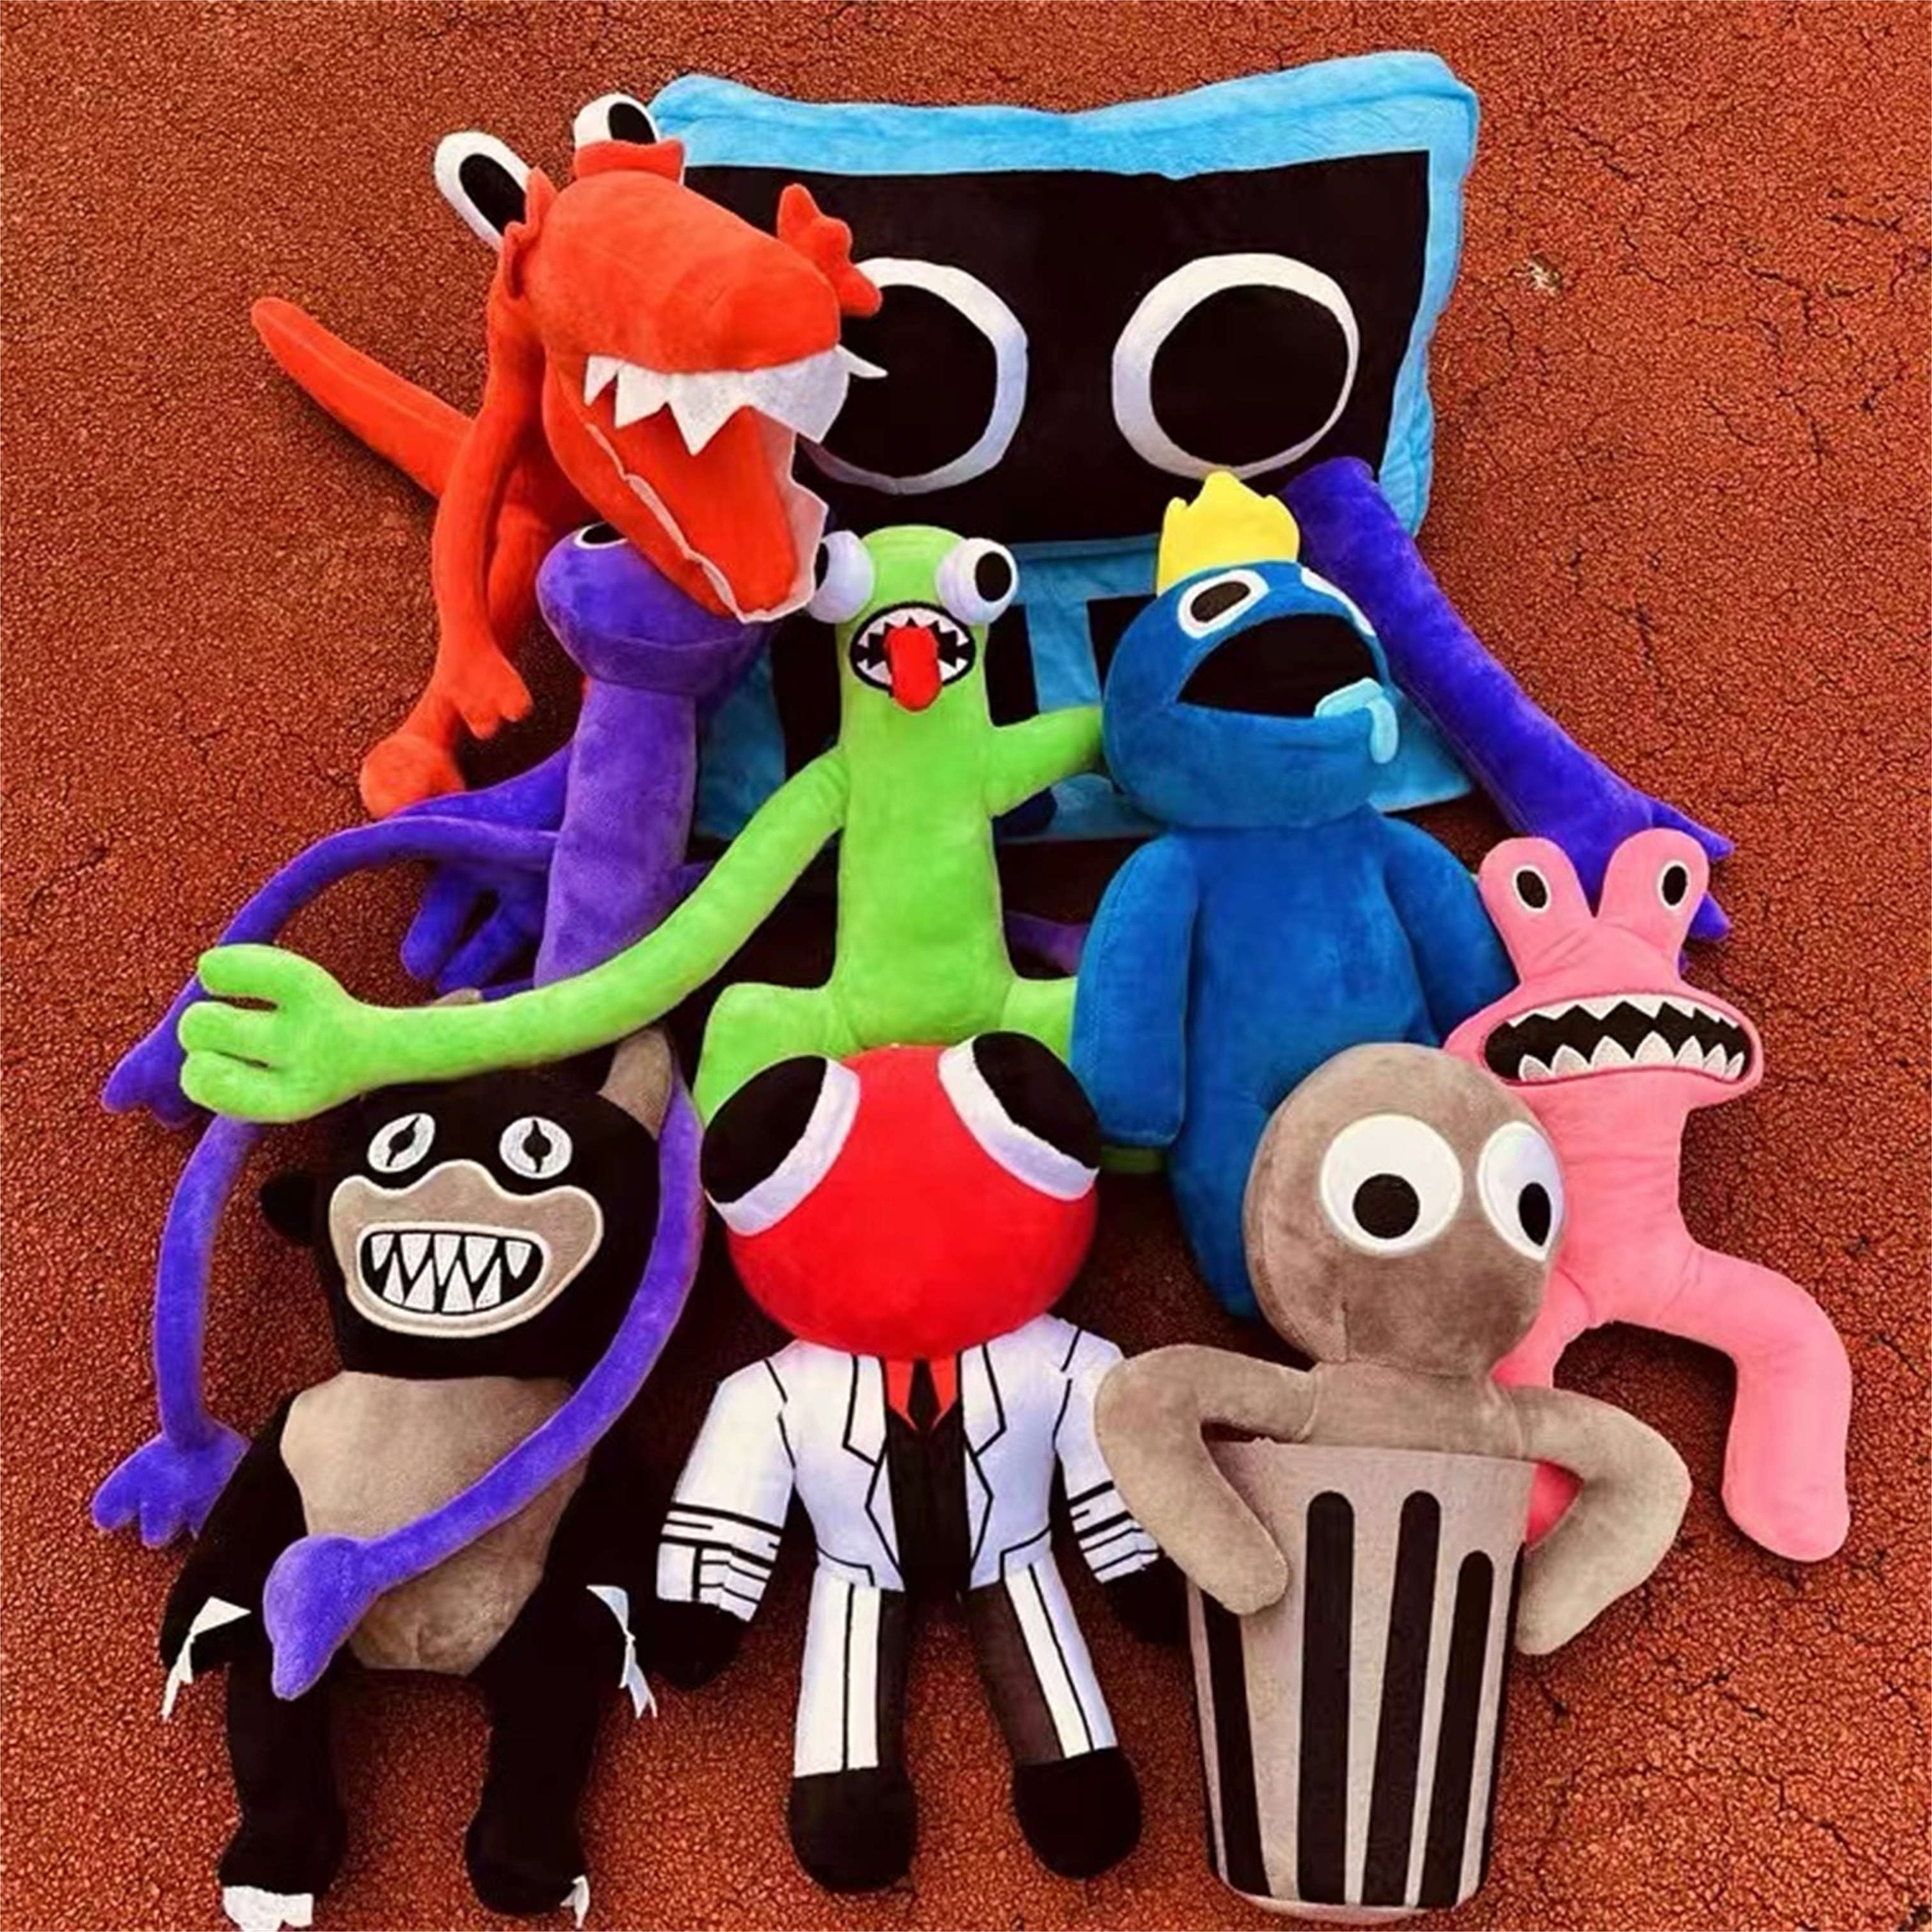 Fantasia Rainbow Friends Babão Blue Roblox com máscara lavável - Mega Toys  São Manuel SP